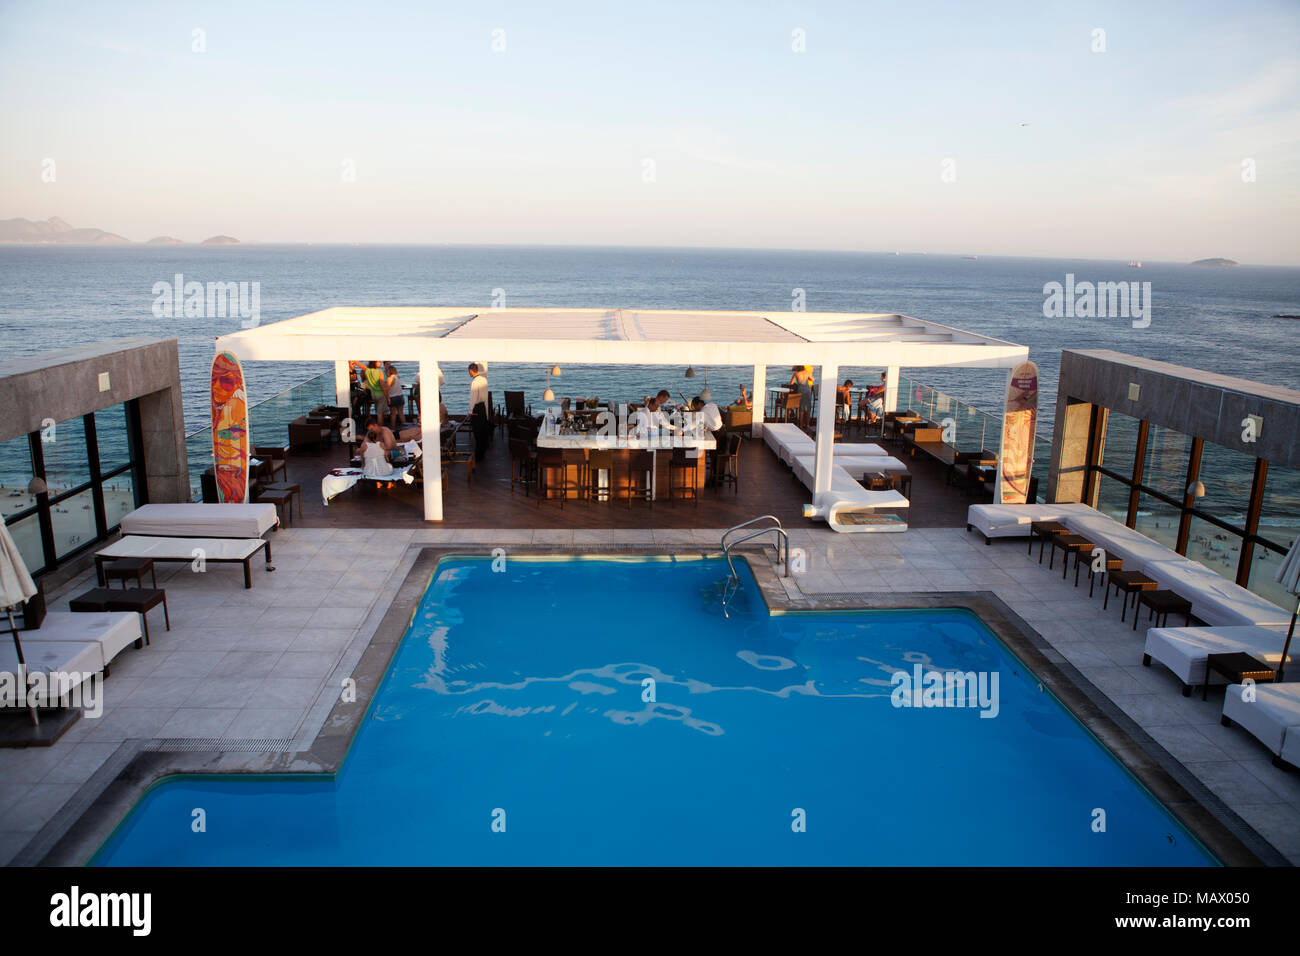 Assunto: Vista da piscina ¿hotel Pestana na Praia de Copacabana Data: 15/02/13 Local: Rio de Janeiro, RJ Autor: Eduardo Zappia Foto de stock